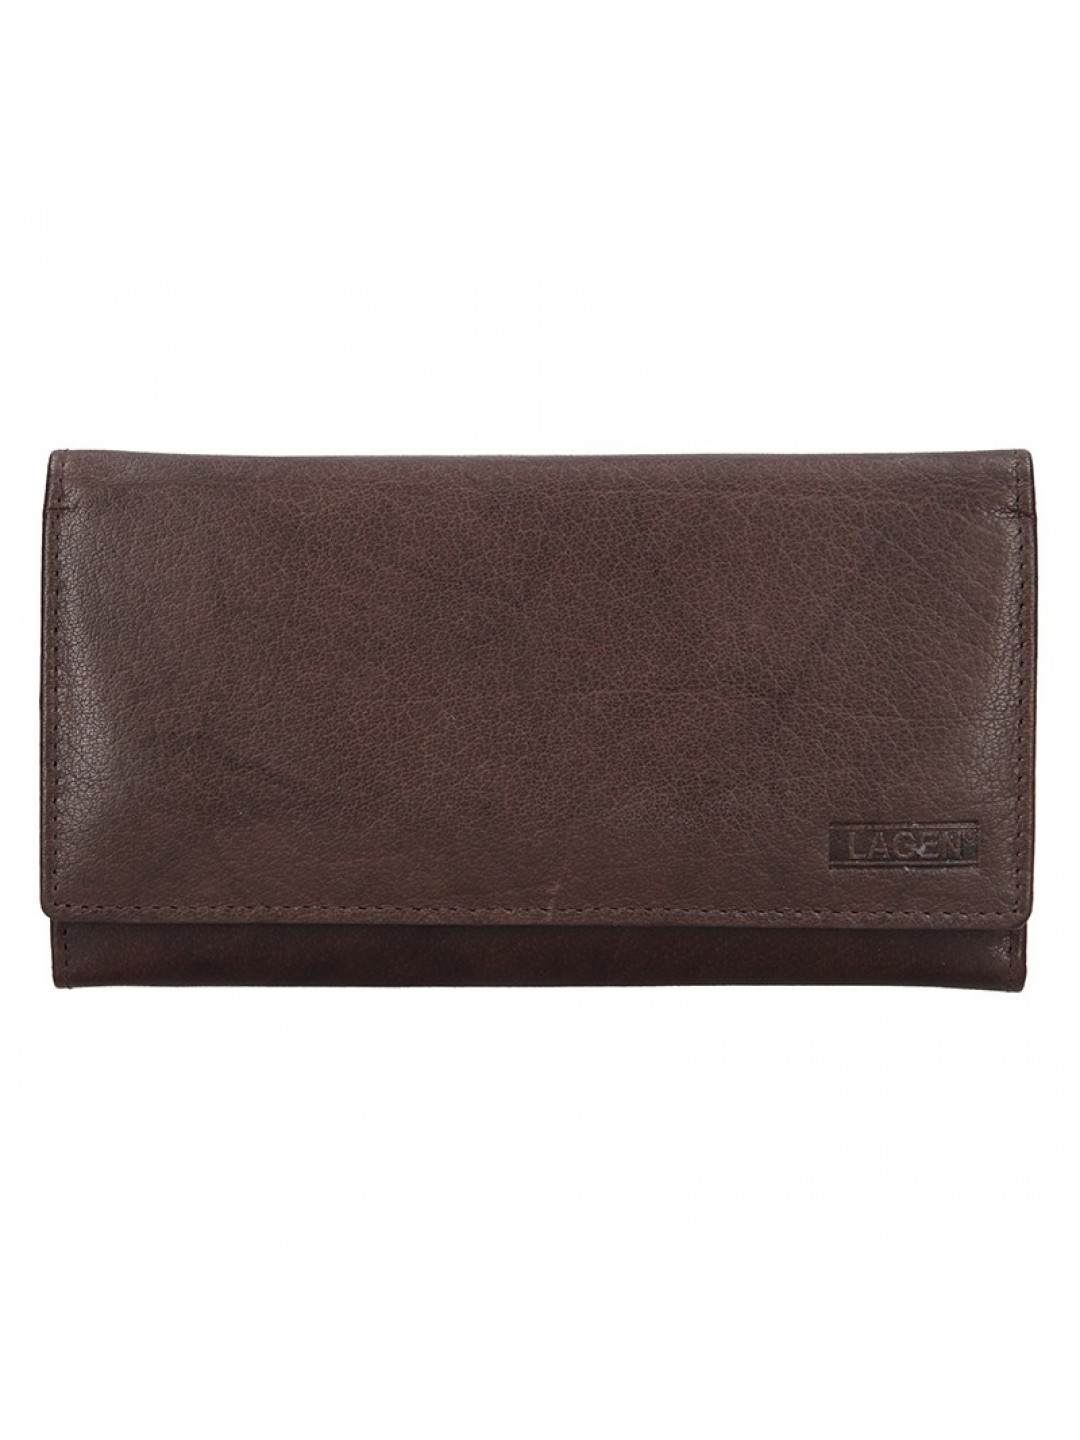 Dámská kožená peněženka Lagen Victoria – tmavě hnědá